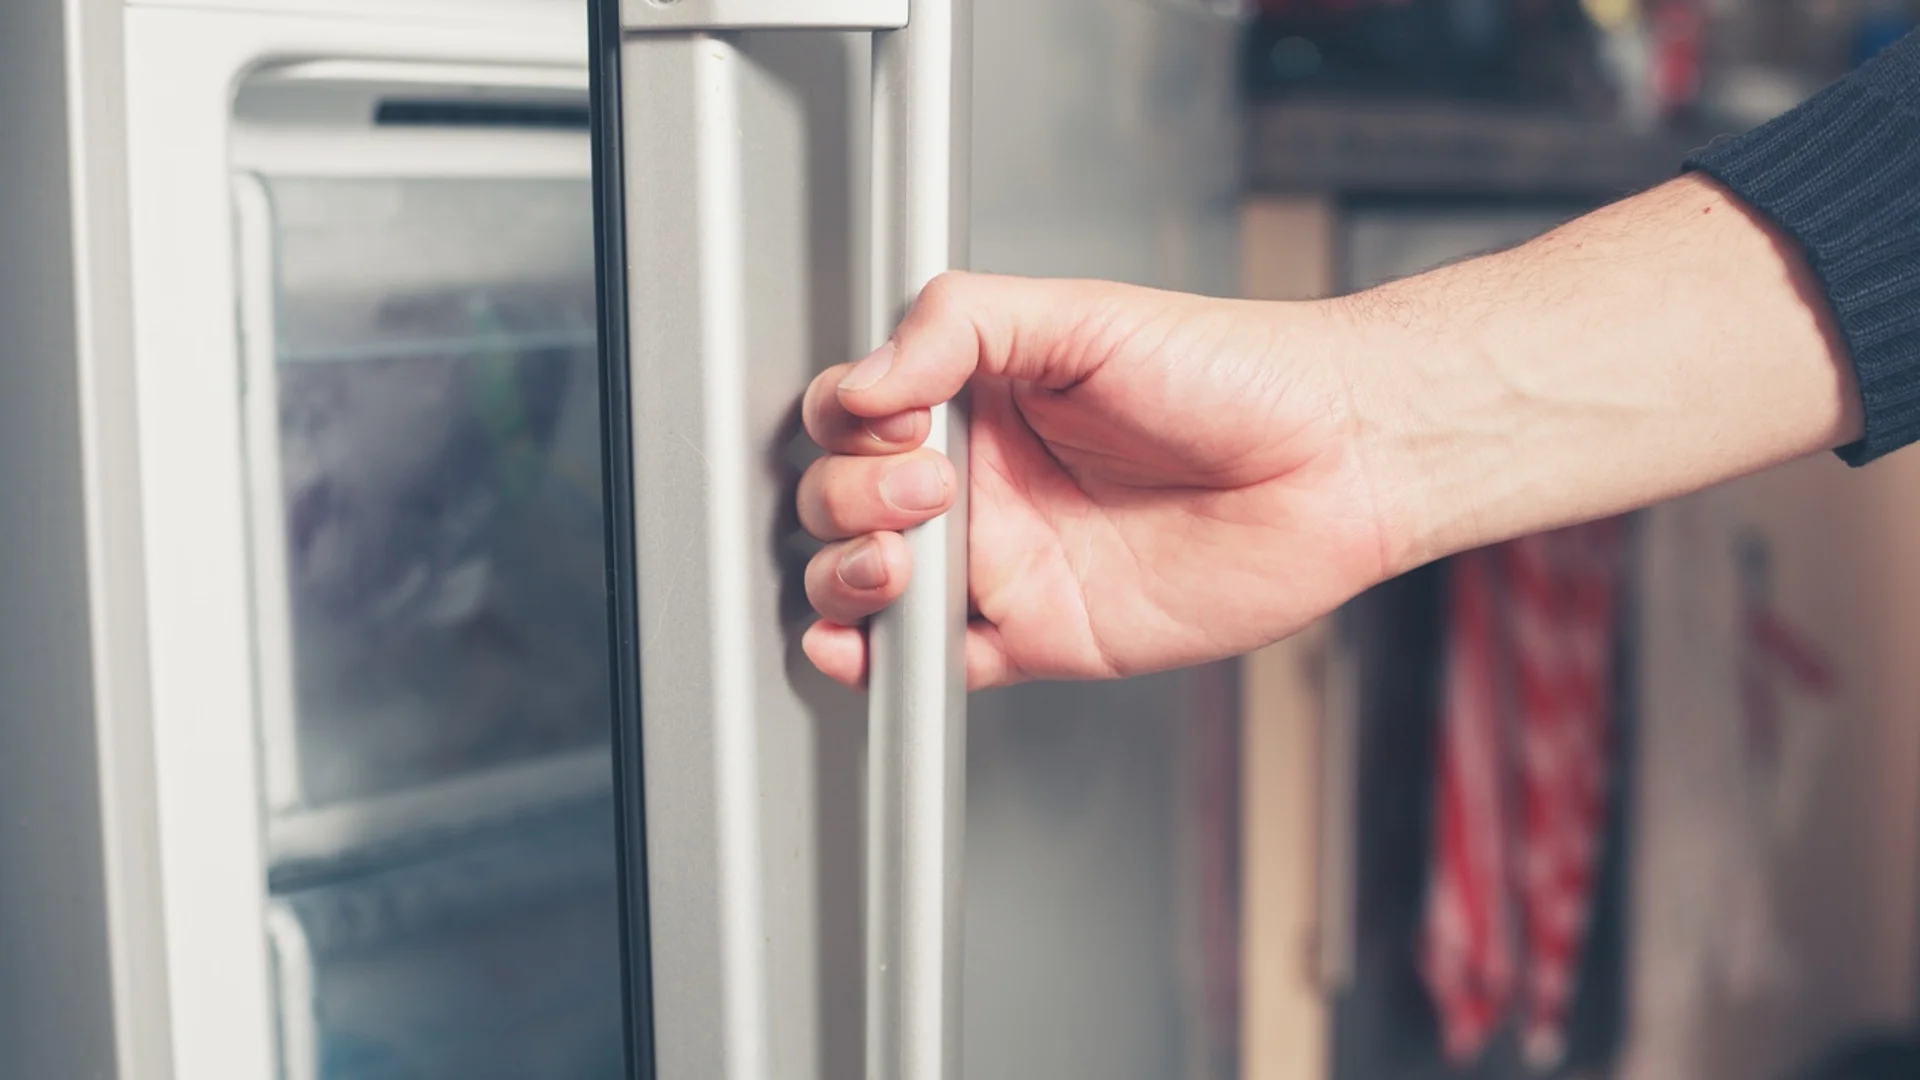 Колко често трябва да размразявате хладилника?